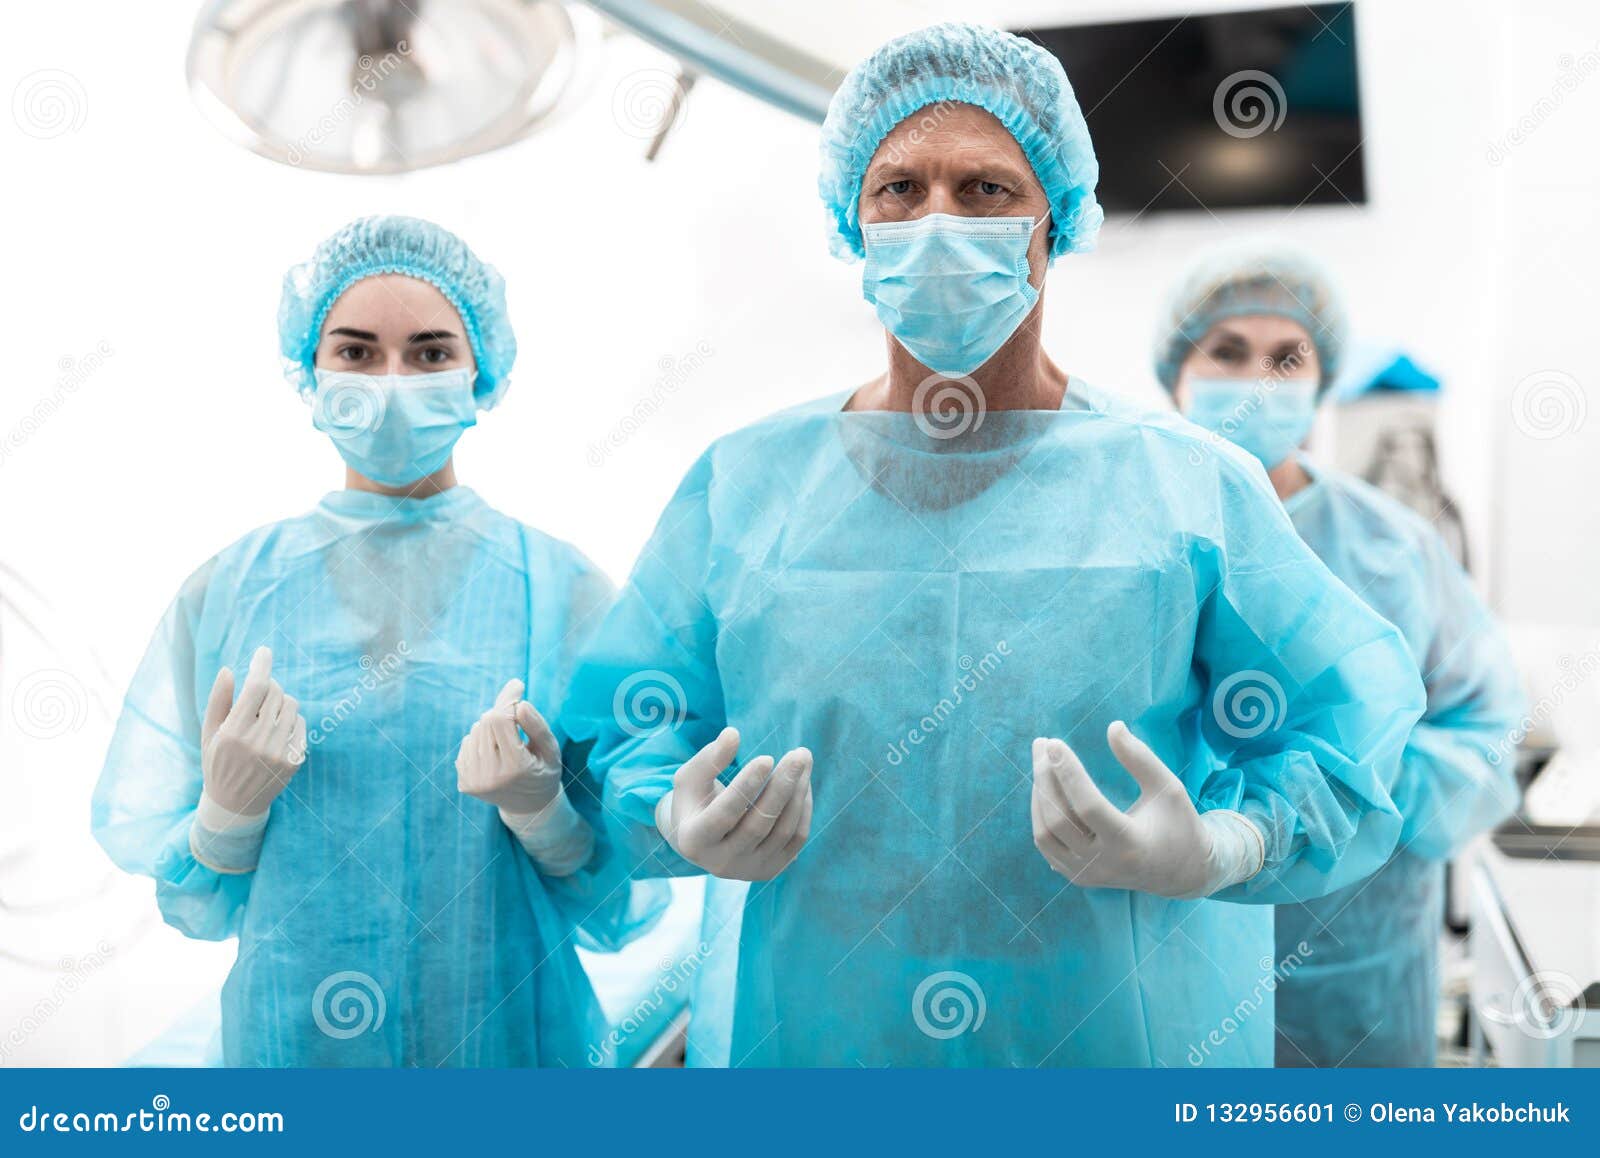 Стерильная медсестра. Одежда хирургов в операционной. Одежда операционной медсестры. Операция хирургия хирург и медсестра.